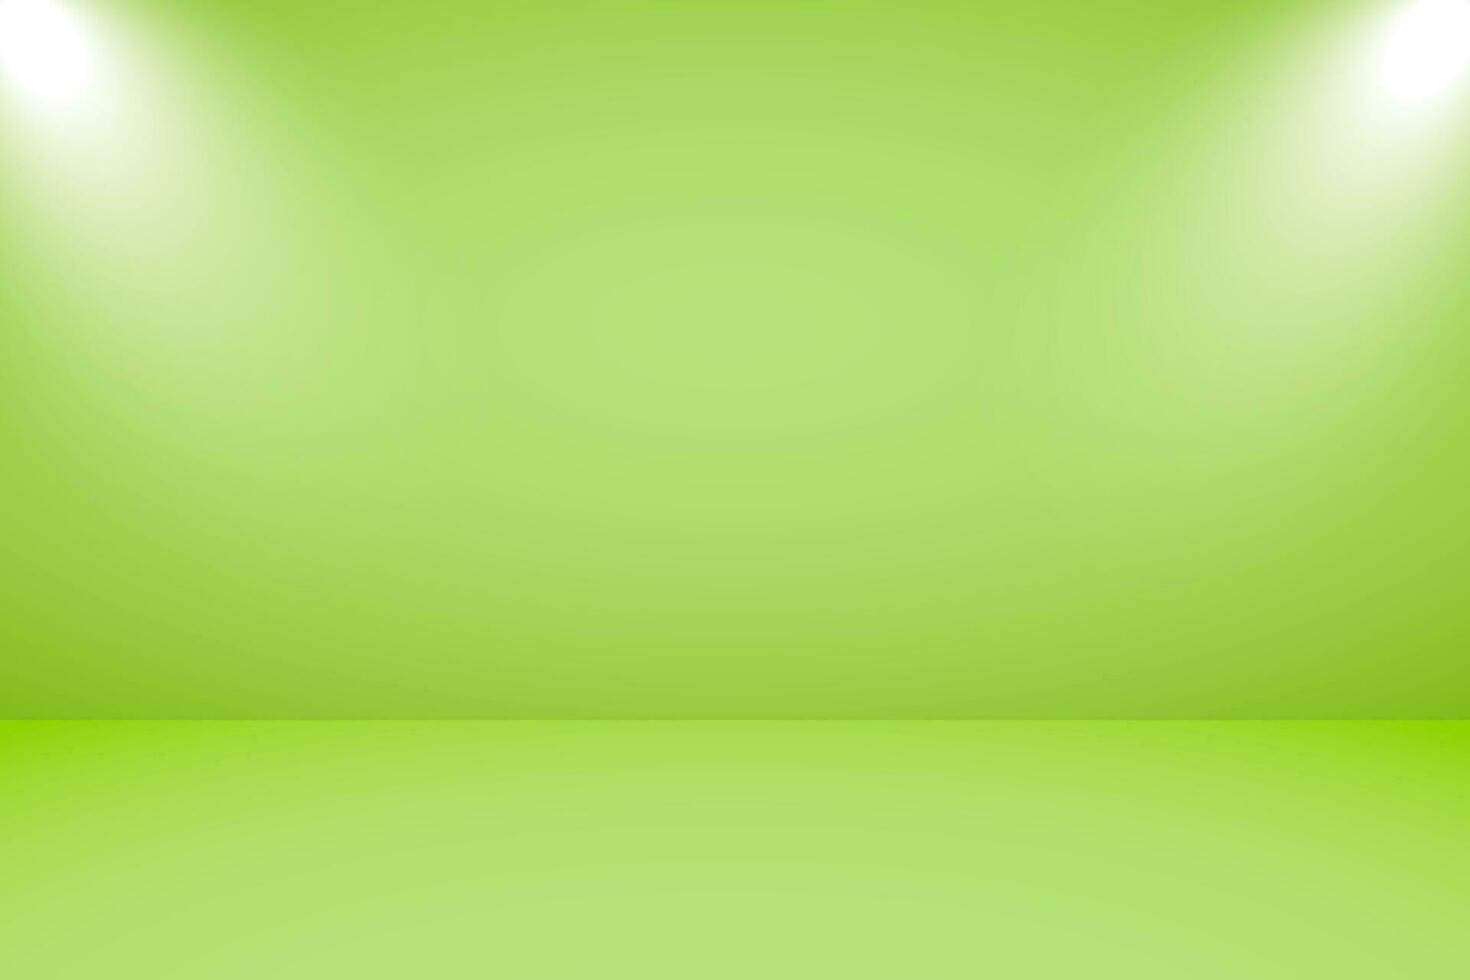 vektor illustration av tömma studio med belysning och ljus grön bakgrund för produkt visa